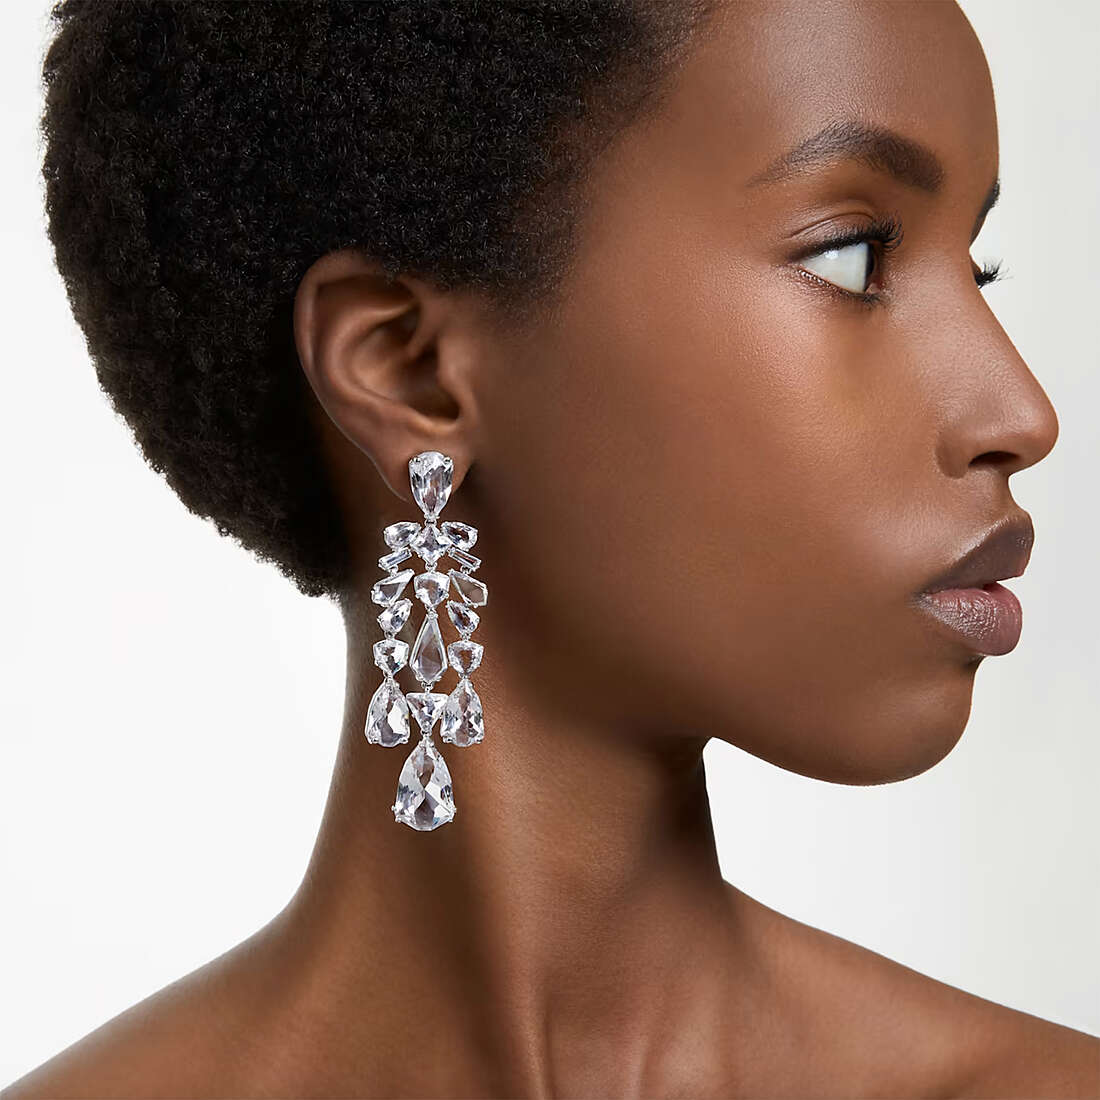 Swarovski earrings woman 5661691 wearing